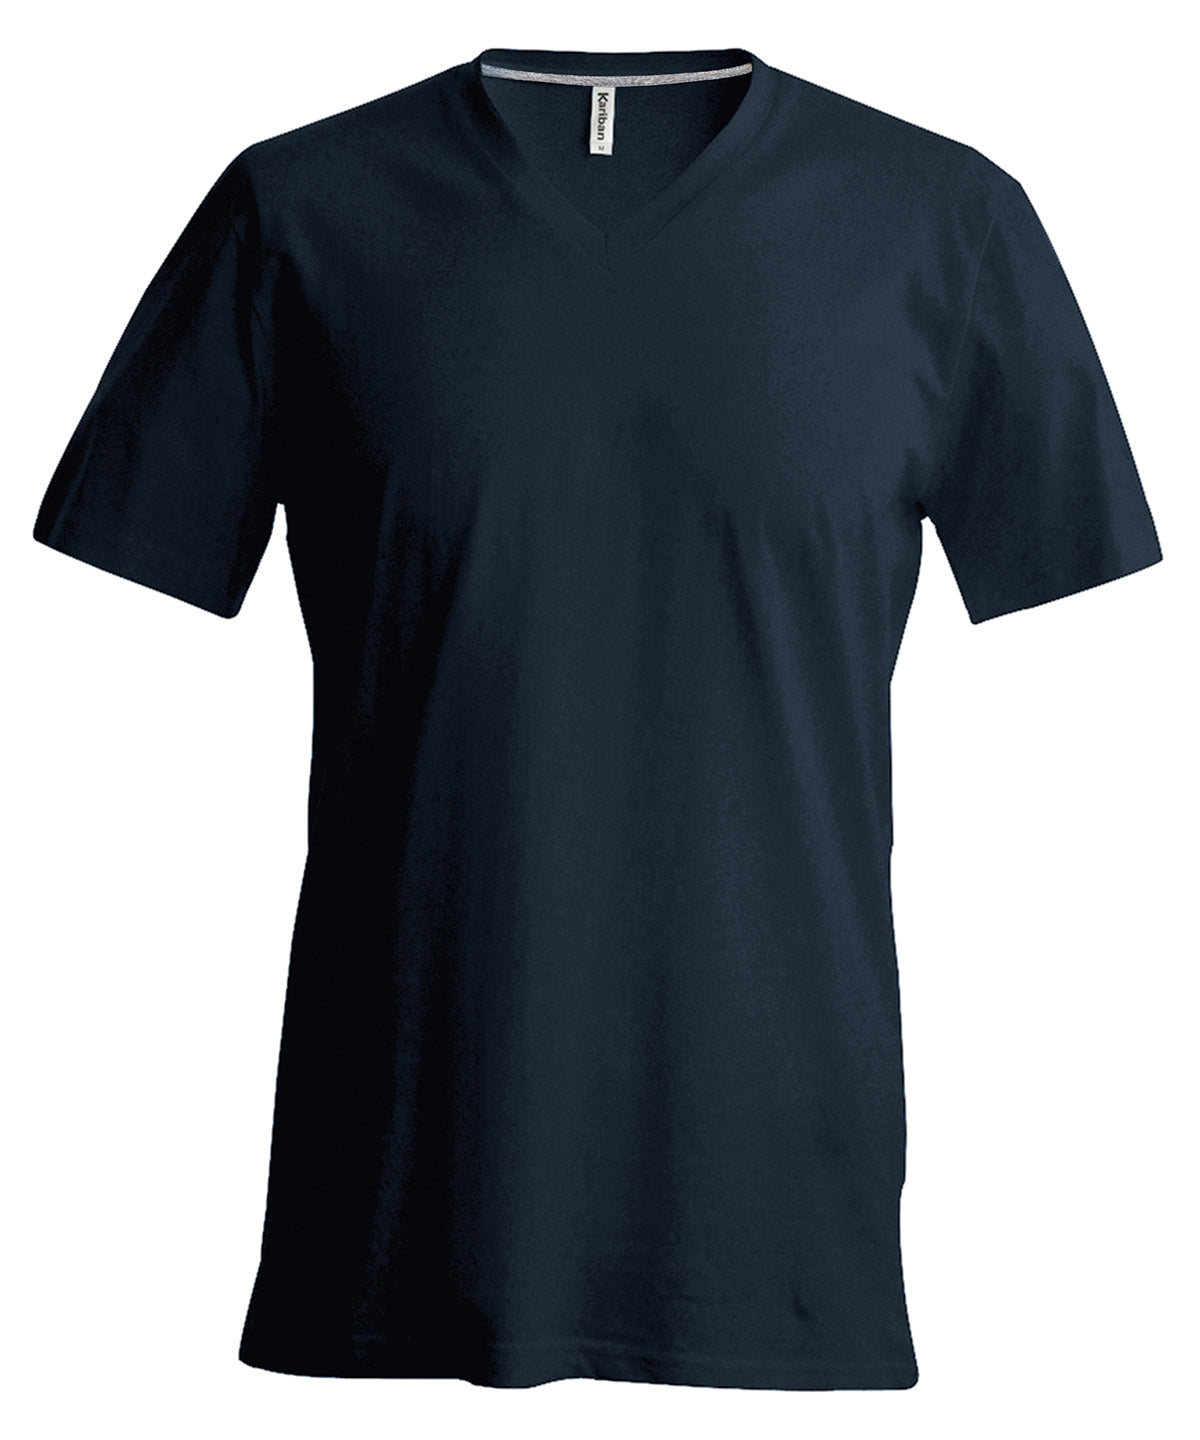 Men's Short-Sleeved V-neck T-shirt